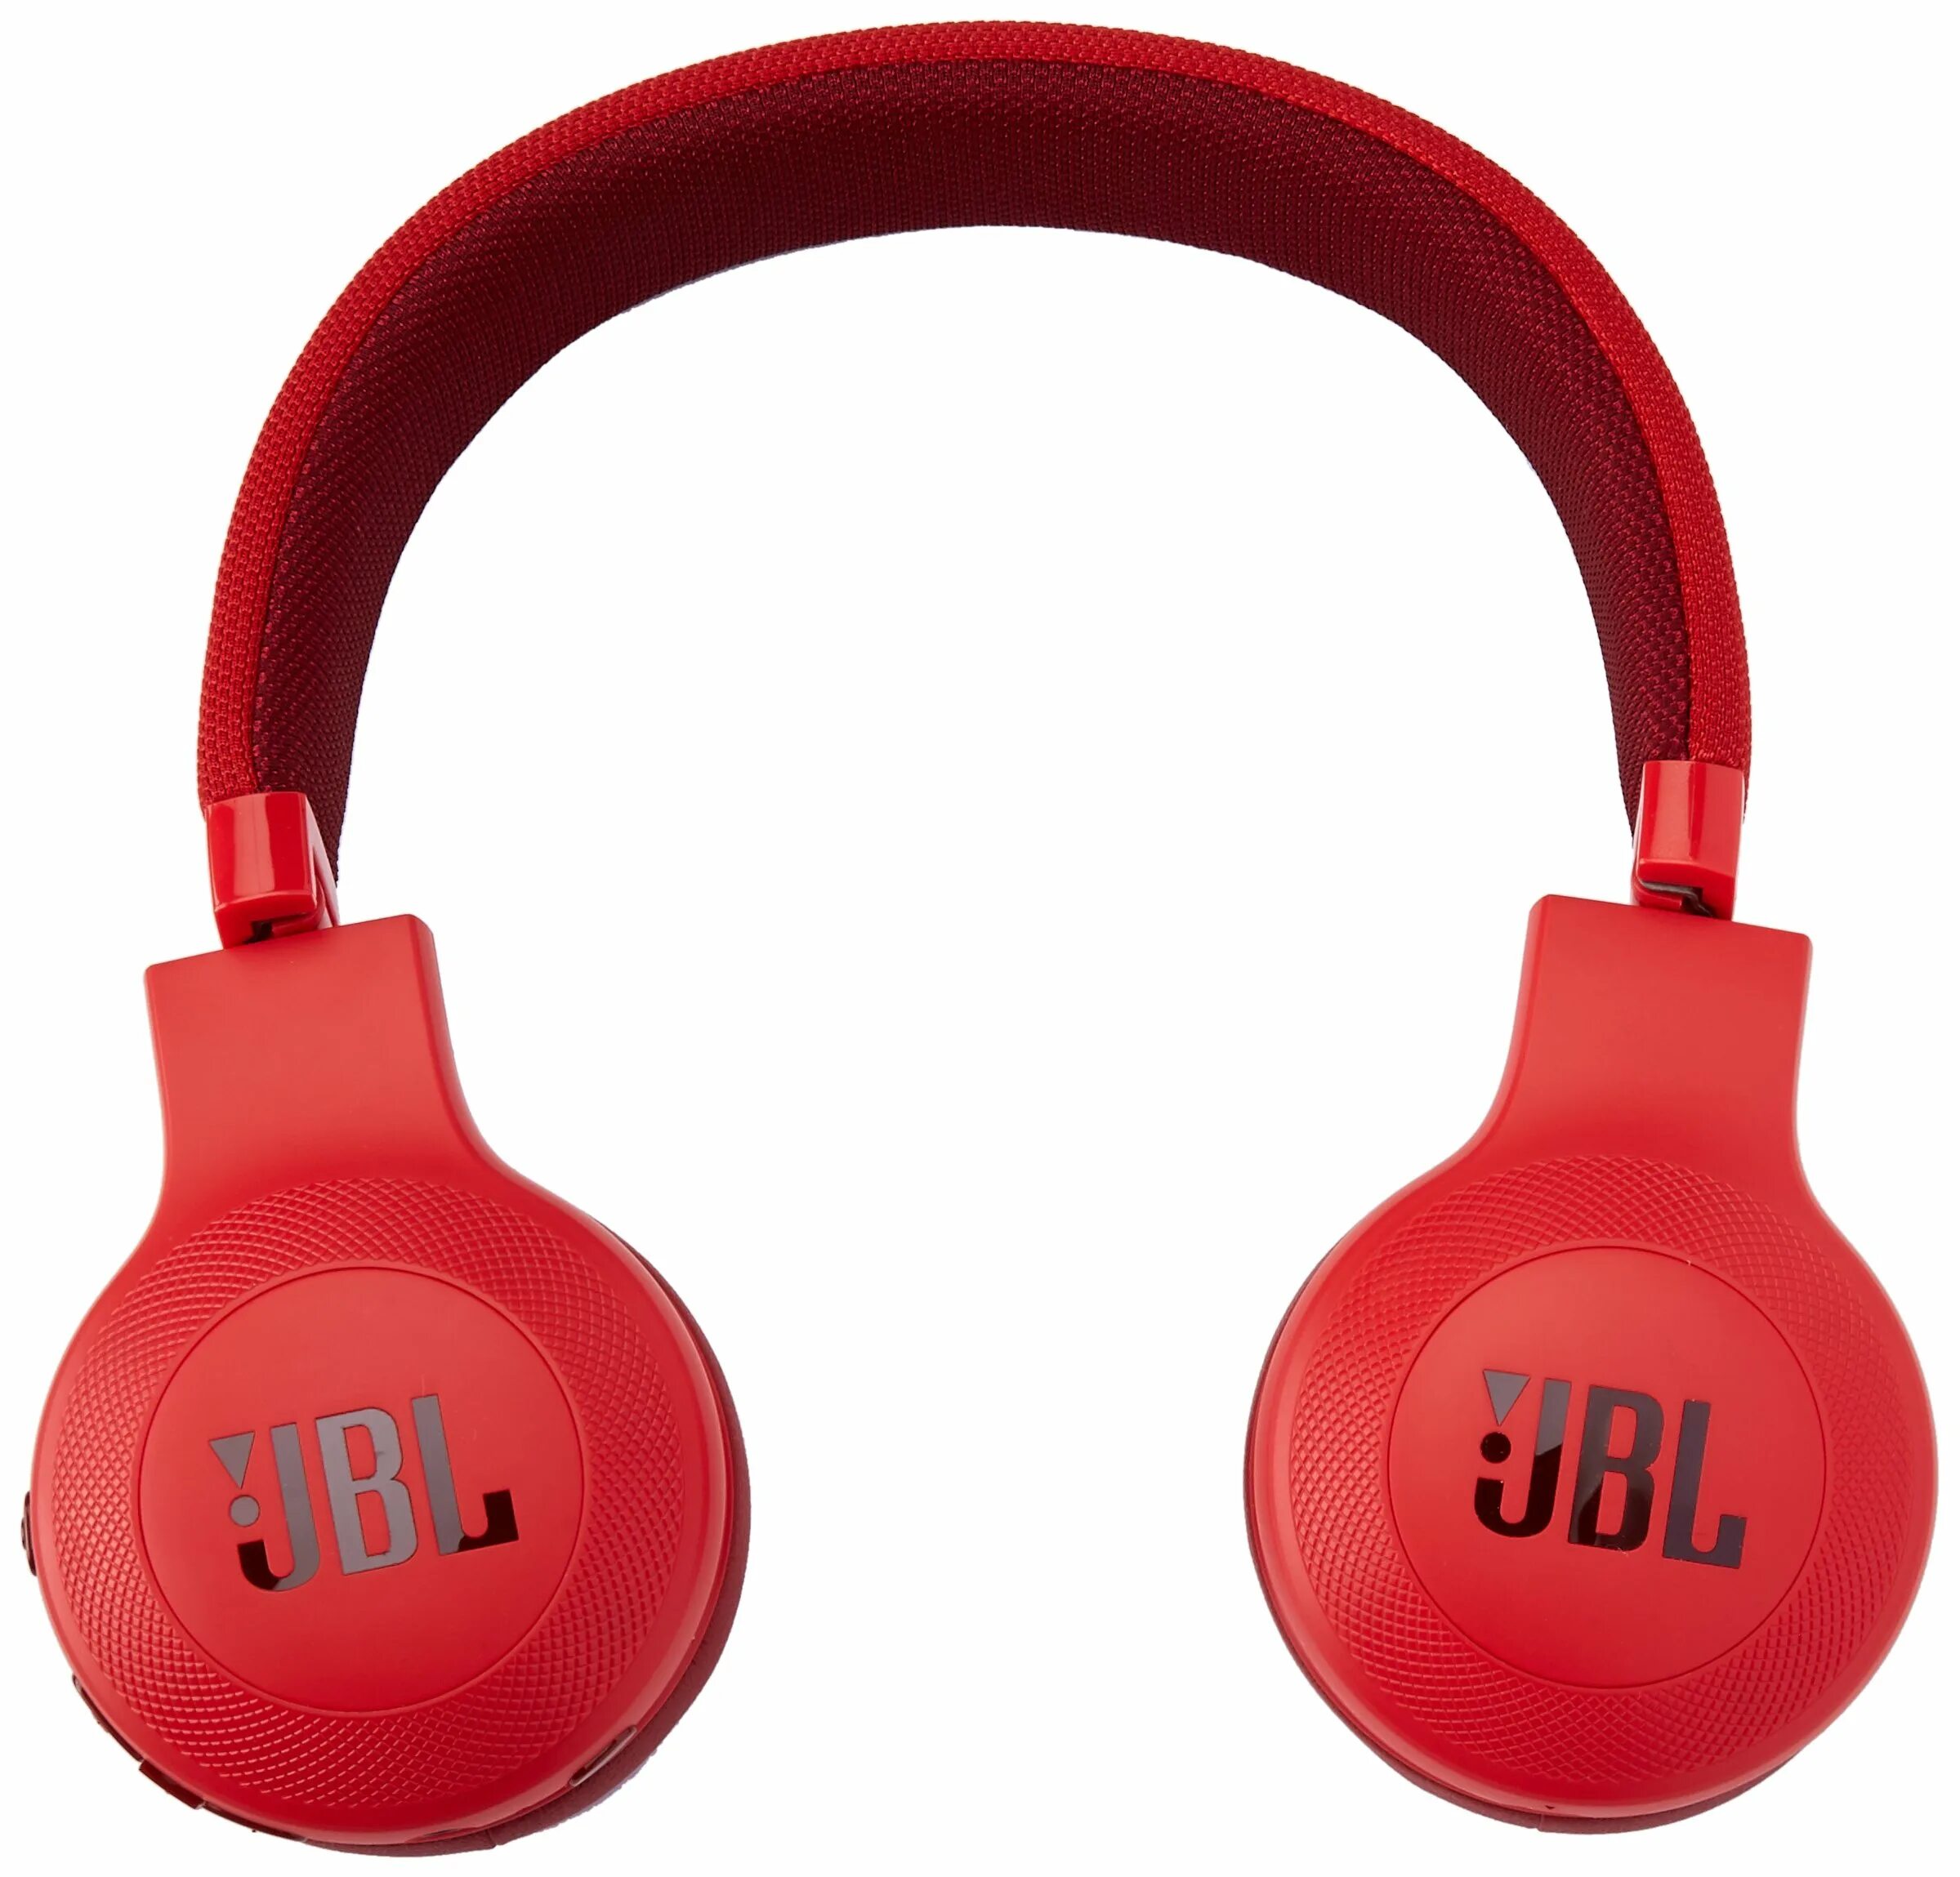 Наушники jbl купить в спб. Беспроводные наушники JBL e45bt. JBL e45bt Red. Наушники Bluetooth JBL e45bt Black (jble45btblk). JBL e45bt Red Warranty.